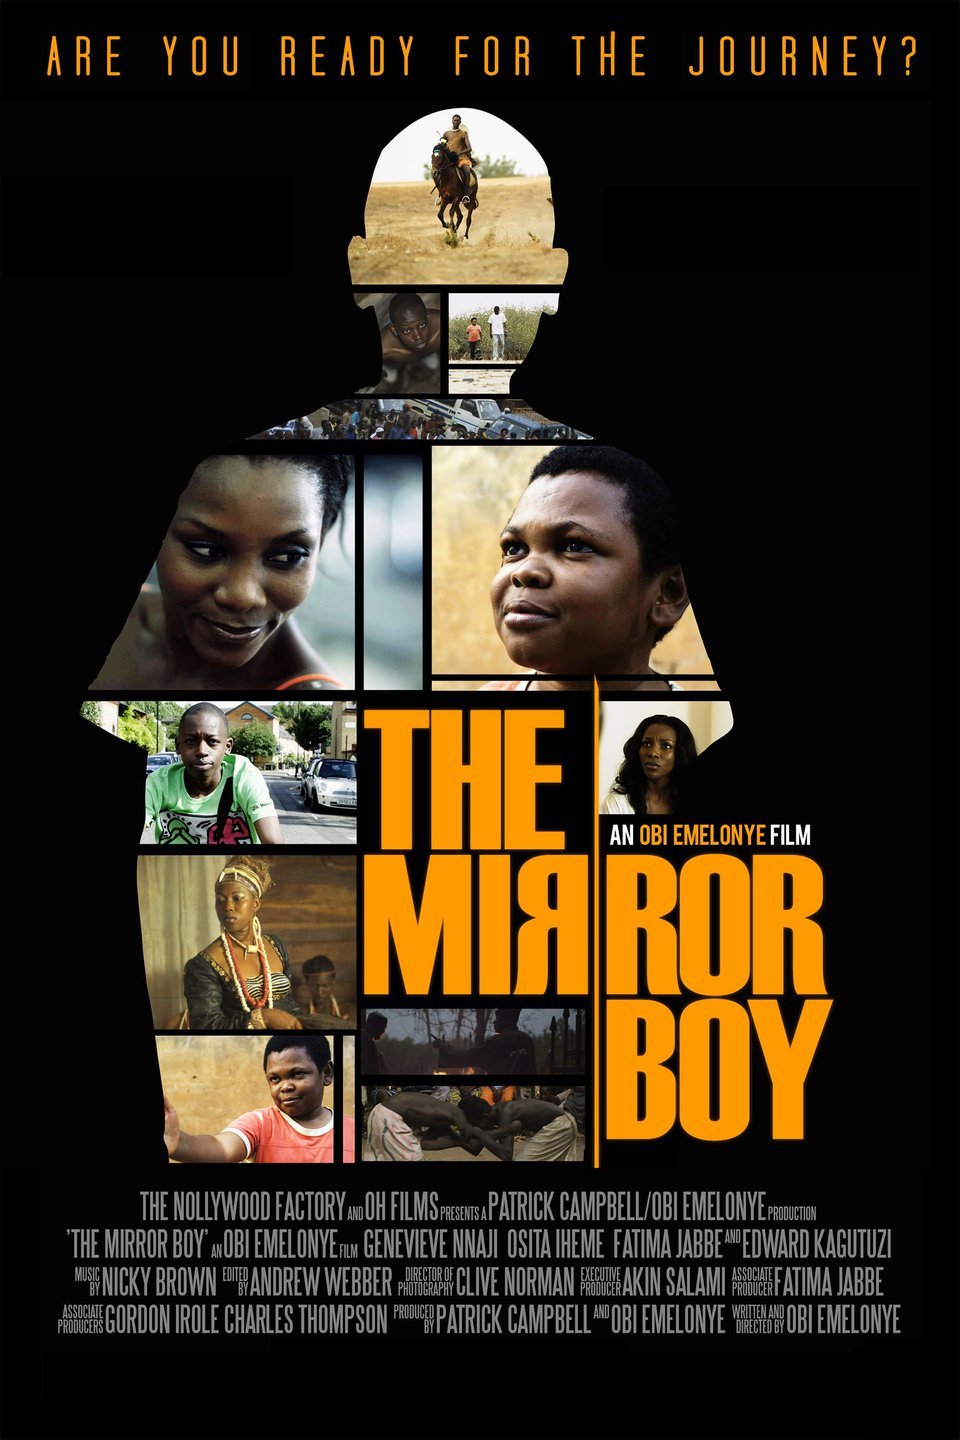 The mirror boy 2011 movie poster